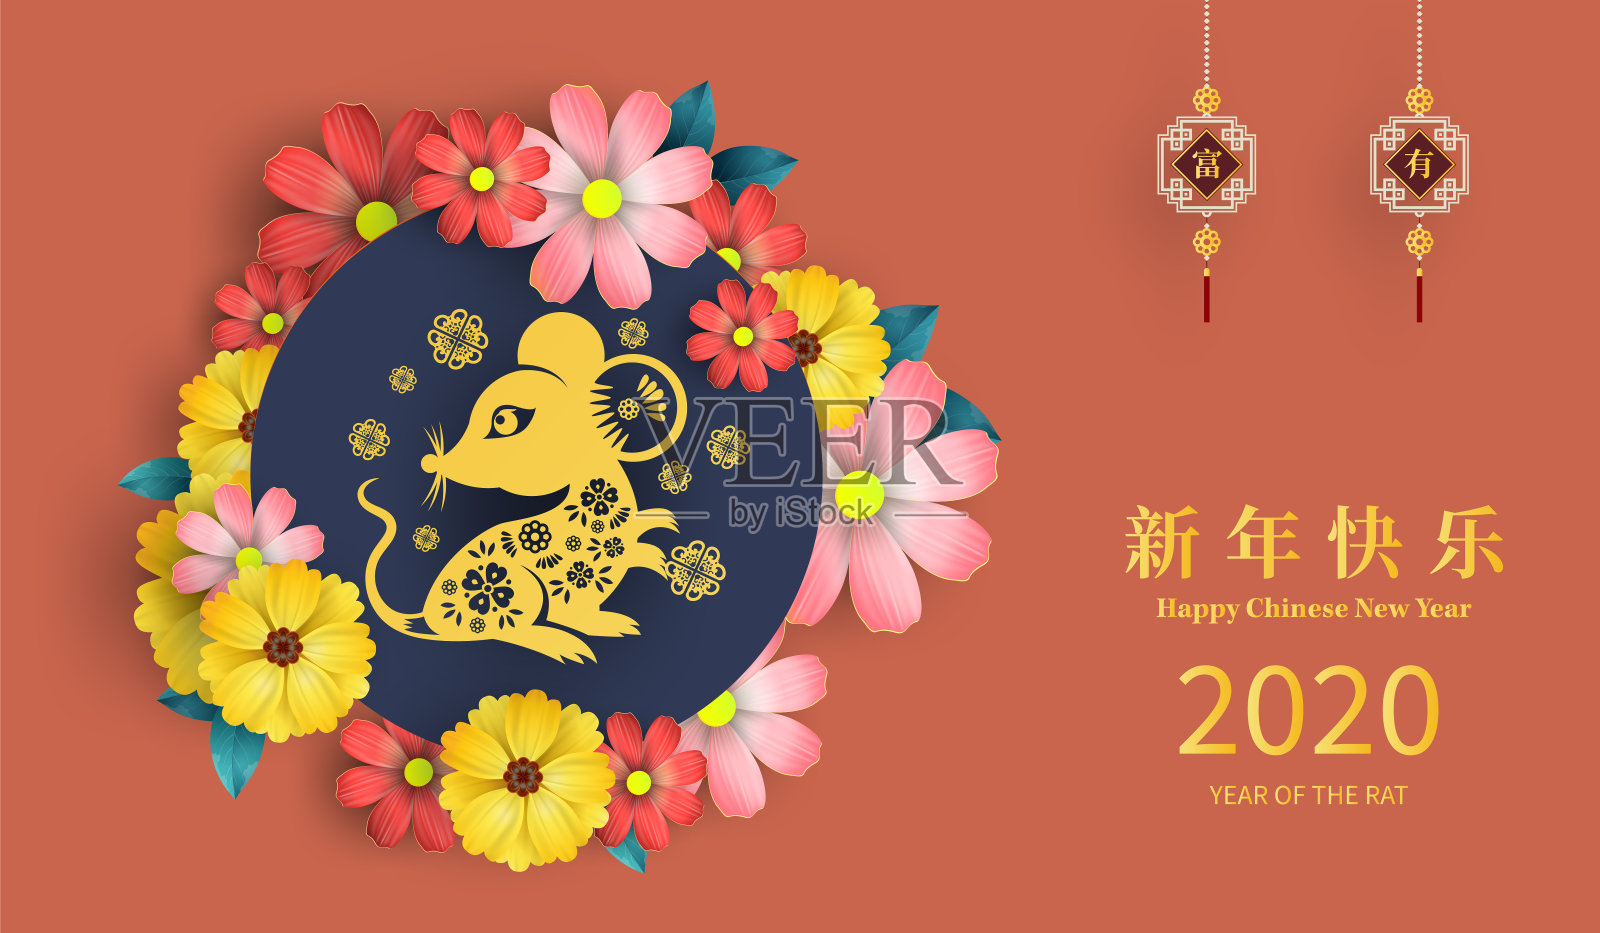 快乐中国新年2020鼠年剪纸风格。汉字意味着新年快乐，富有。2020年农历新年。贺卡、请帖、海报、横幅、日历等十二生肖标志设计模板素材